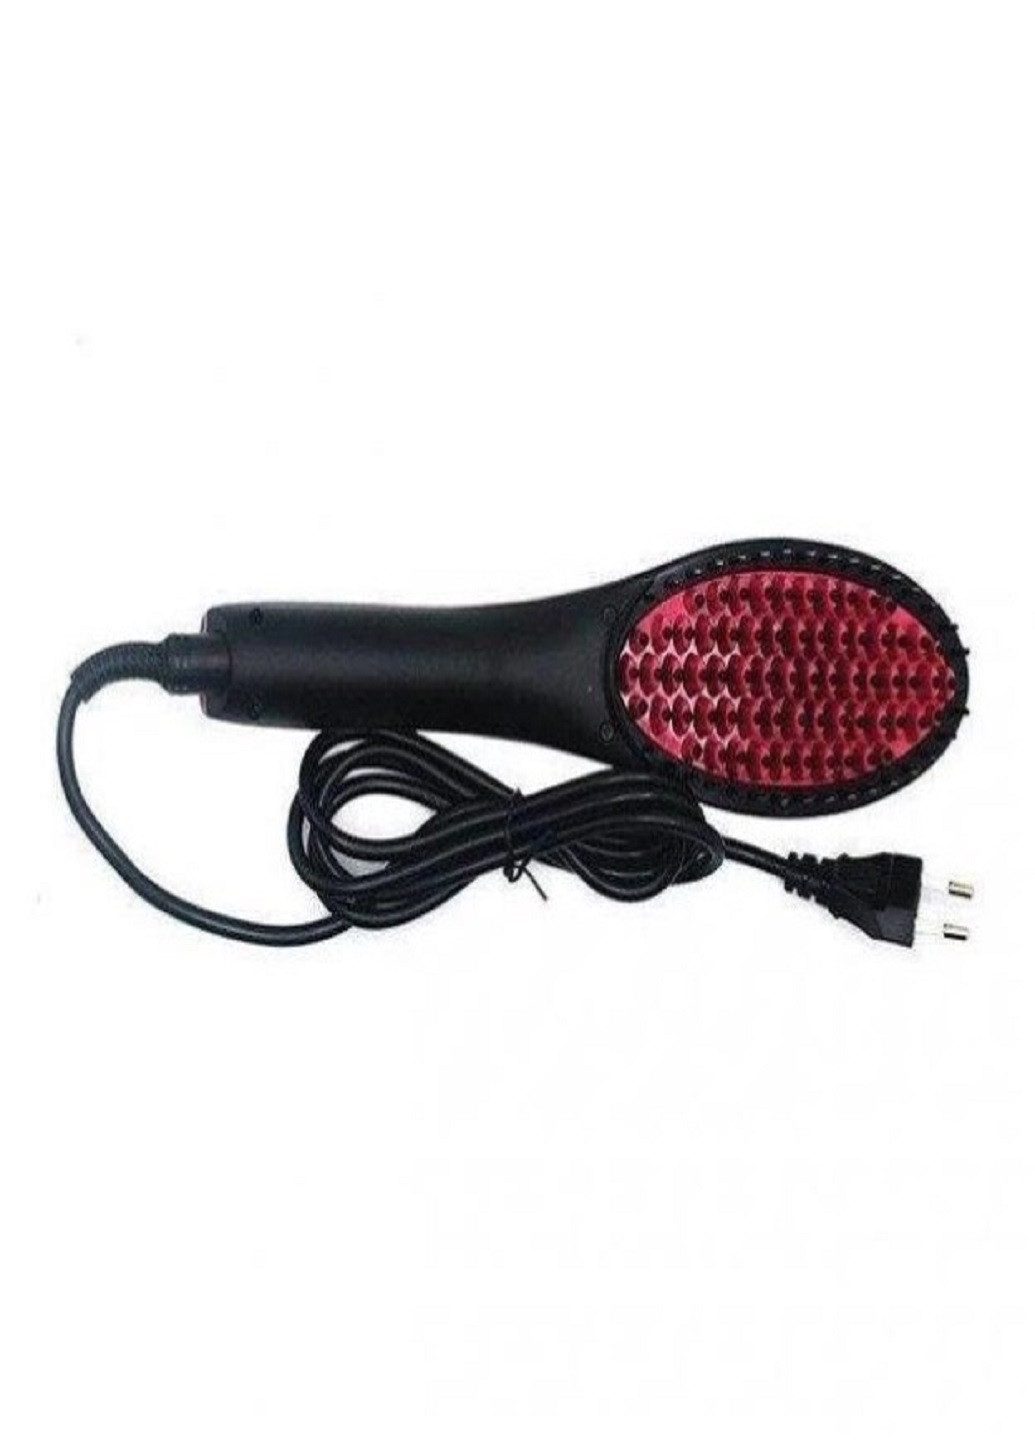 Гребінець-випрямляч для волосся Straight artifact HQT-906B електричний з LED дисплеєм VTech (259575613)